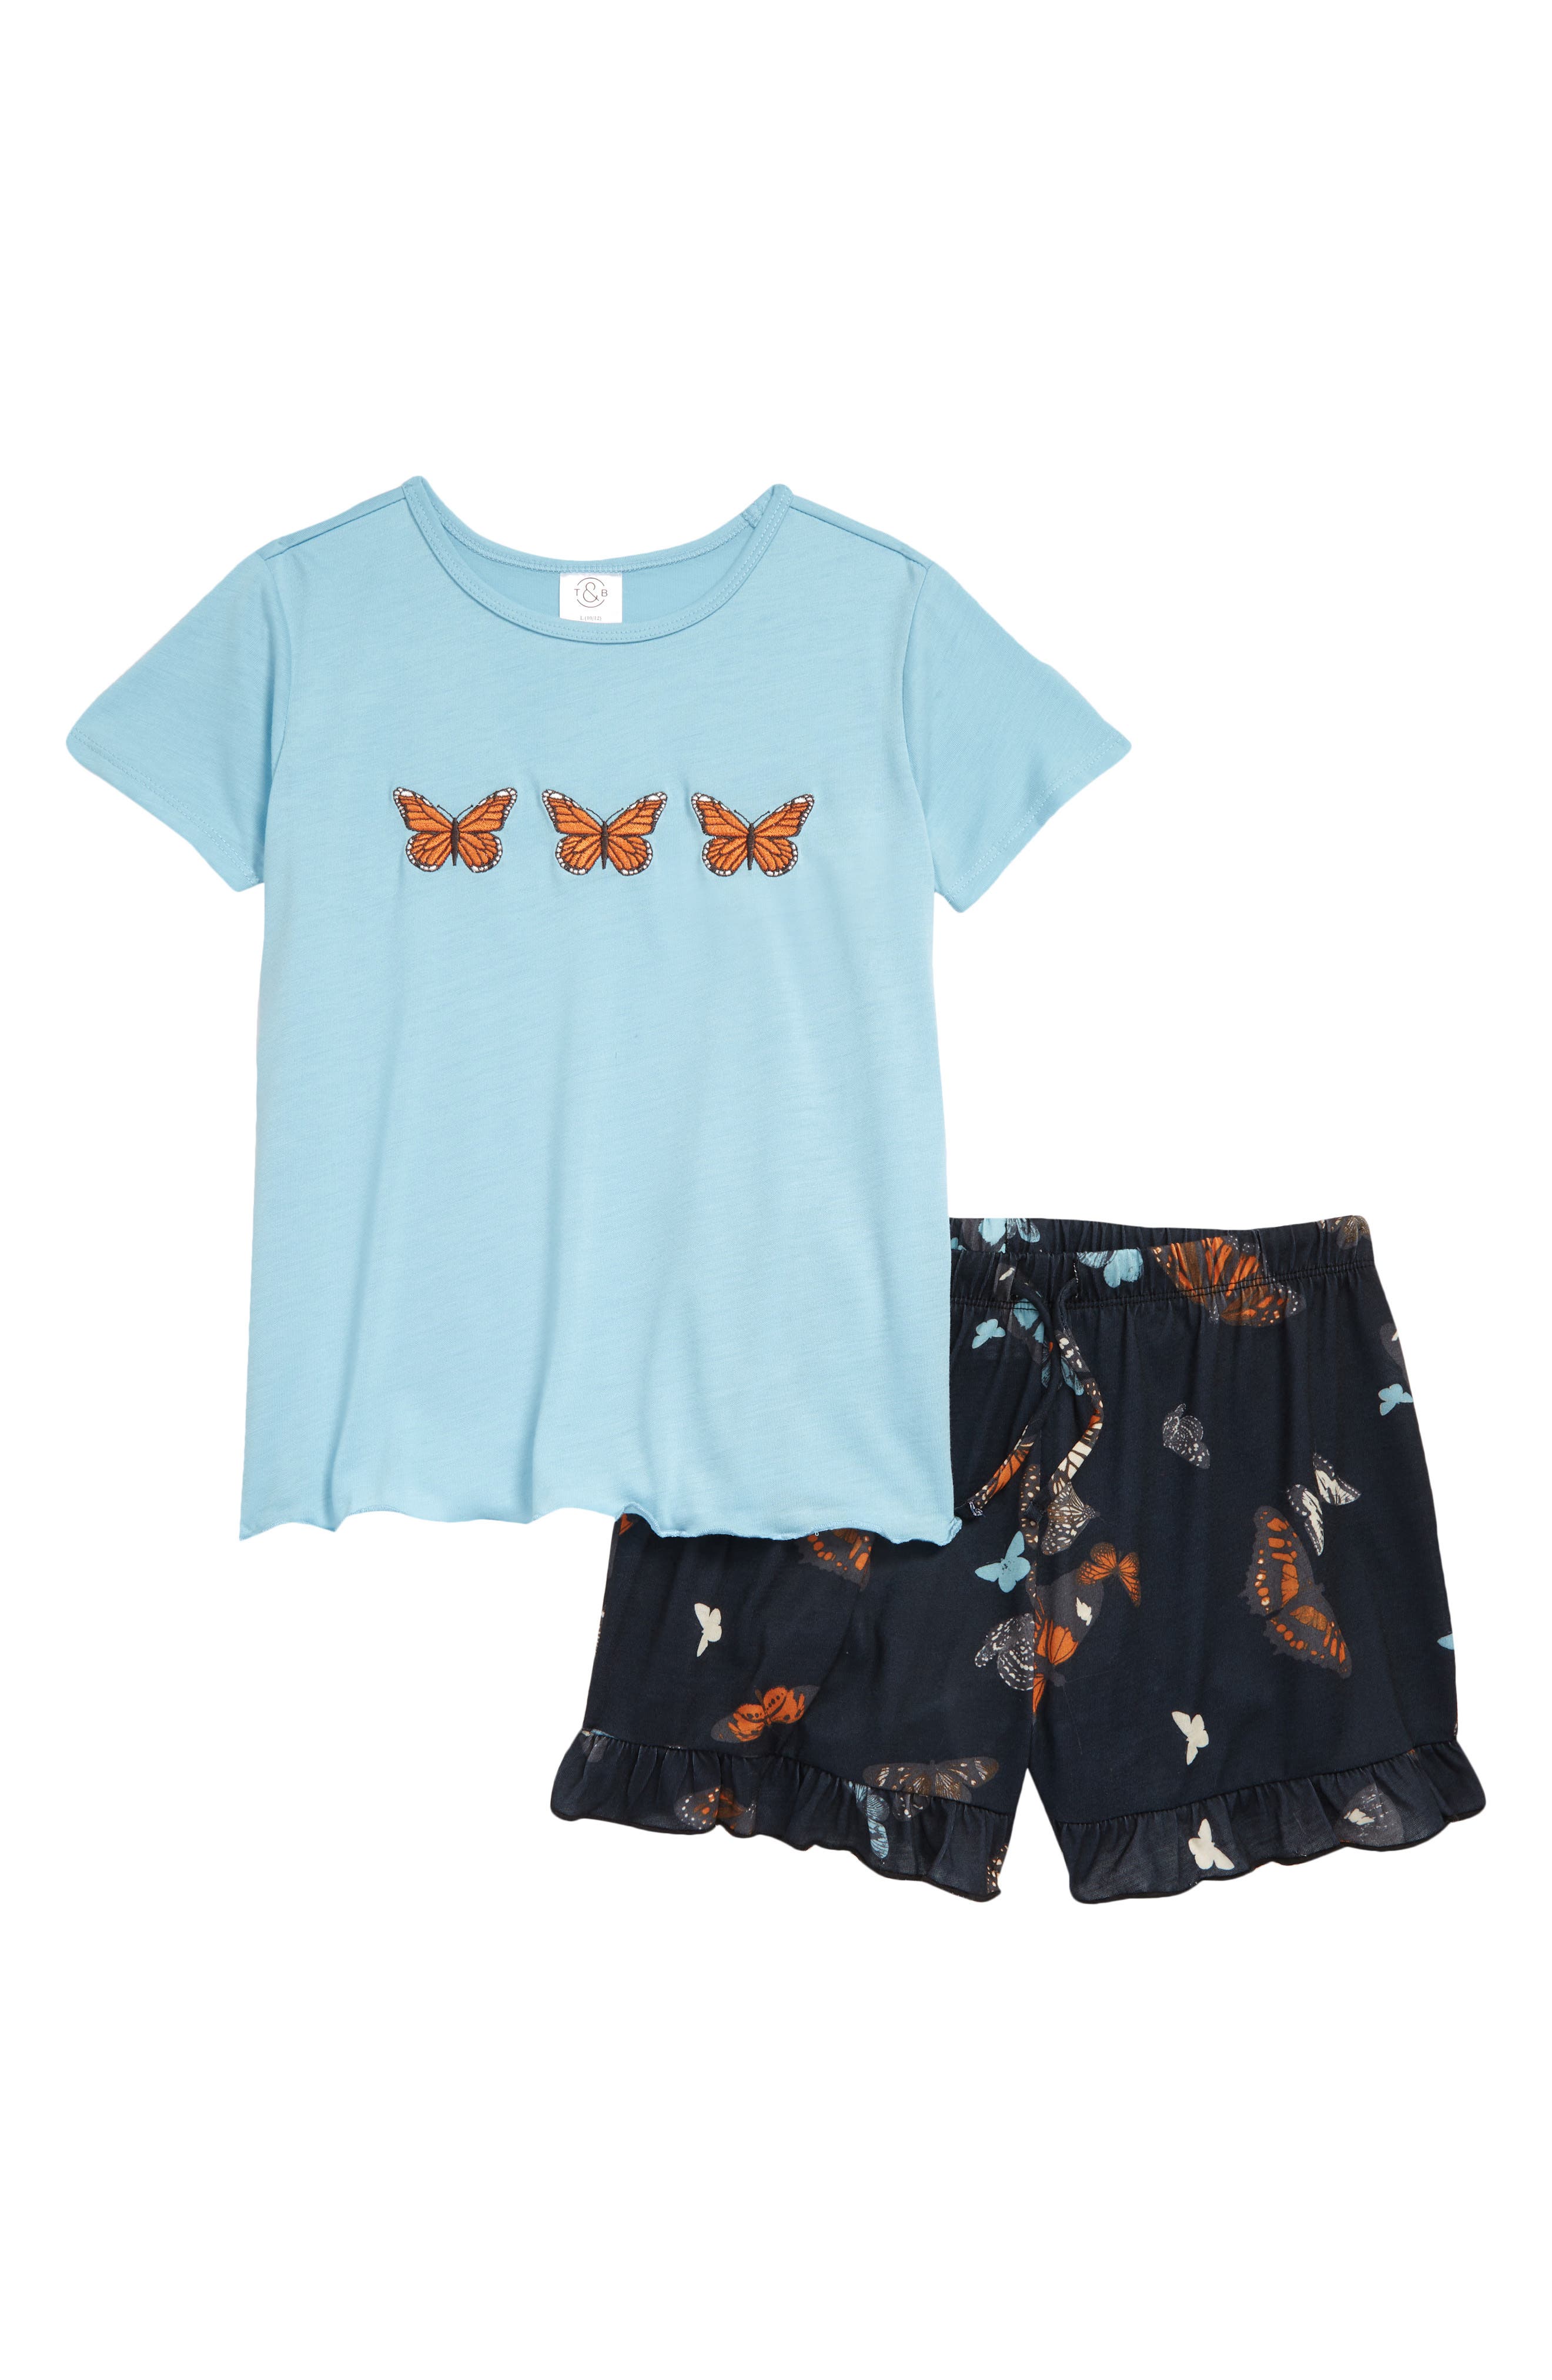 Bluey Pyjamas T-shirt & Shorts Set For Girls Sizes 4 5 6 Christmas Gift New 